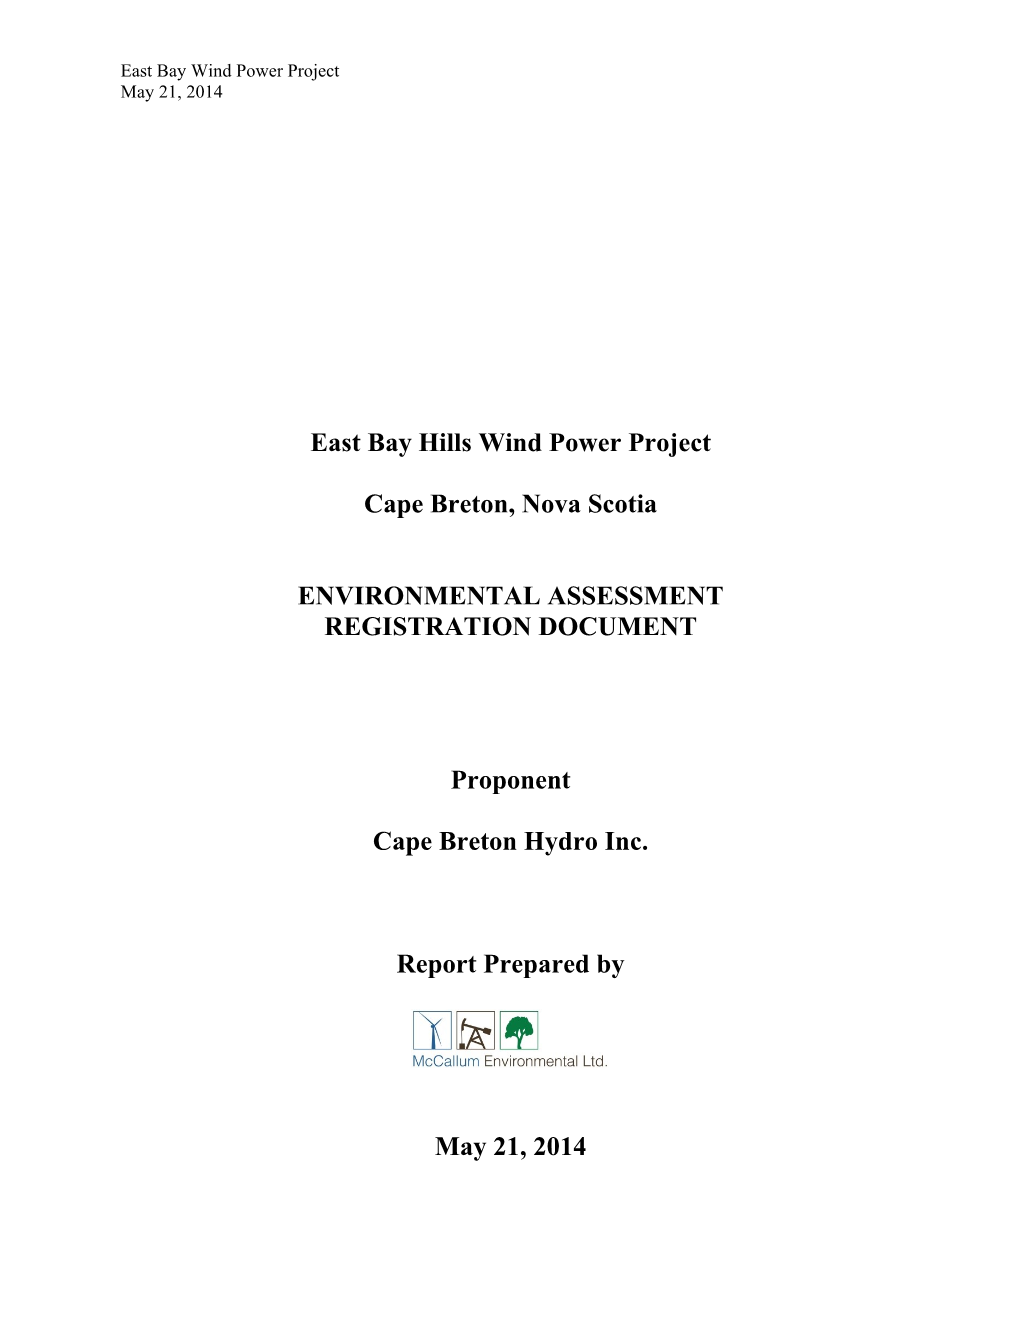 East Bay Hills Wind Power Project Cape Breton, Nova Scotia